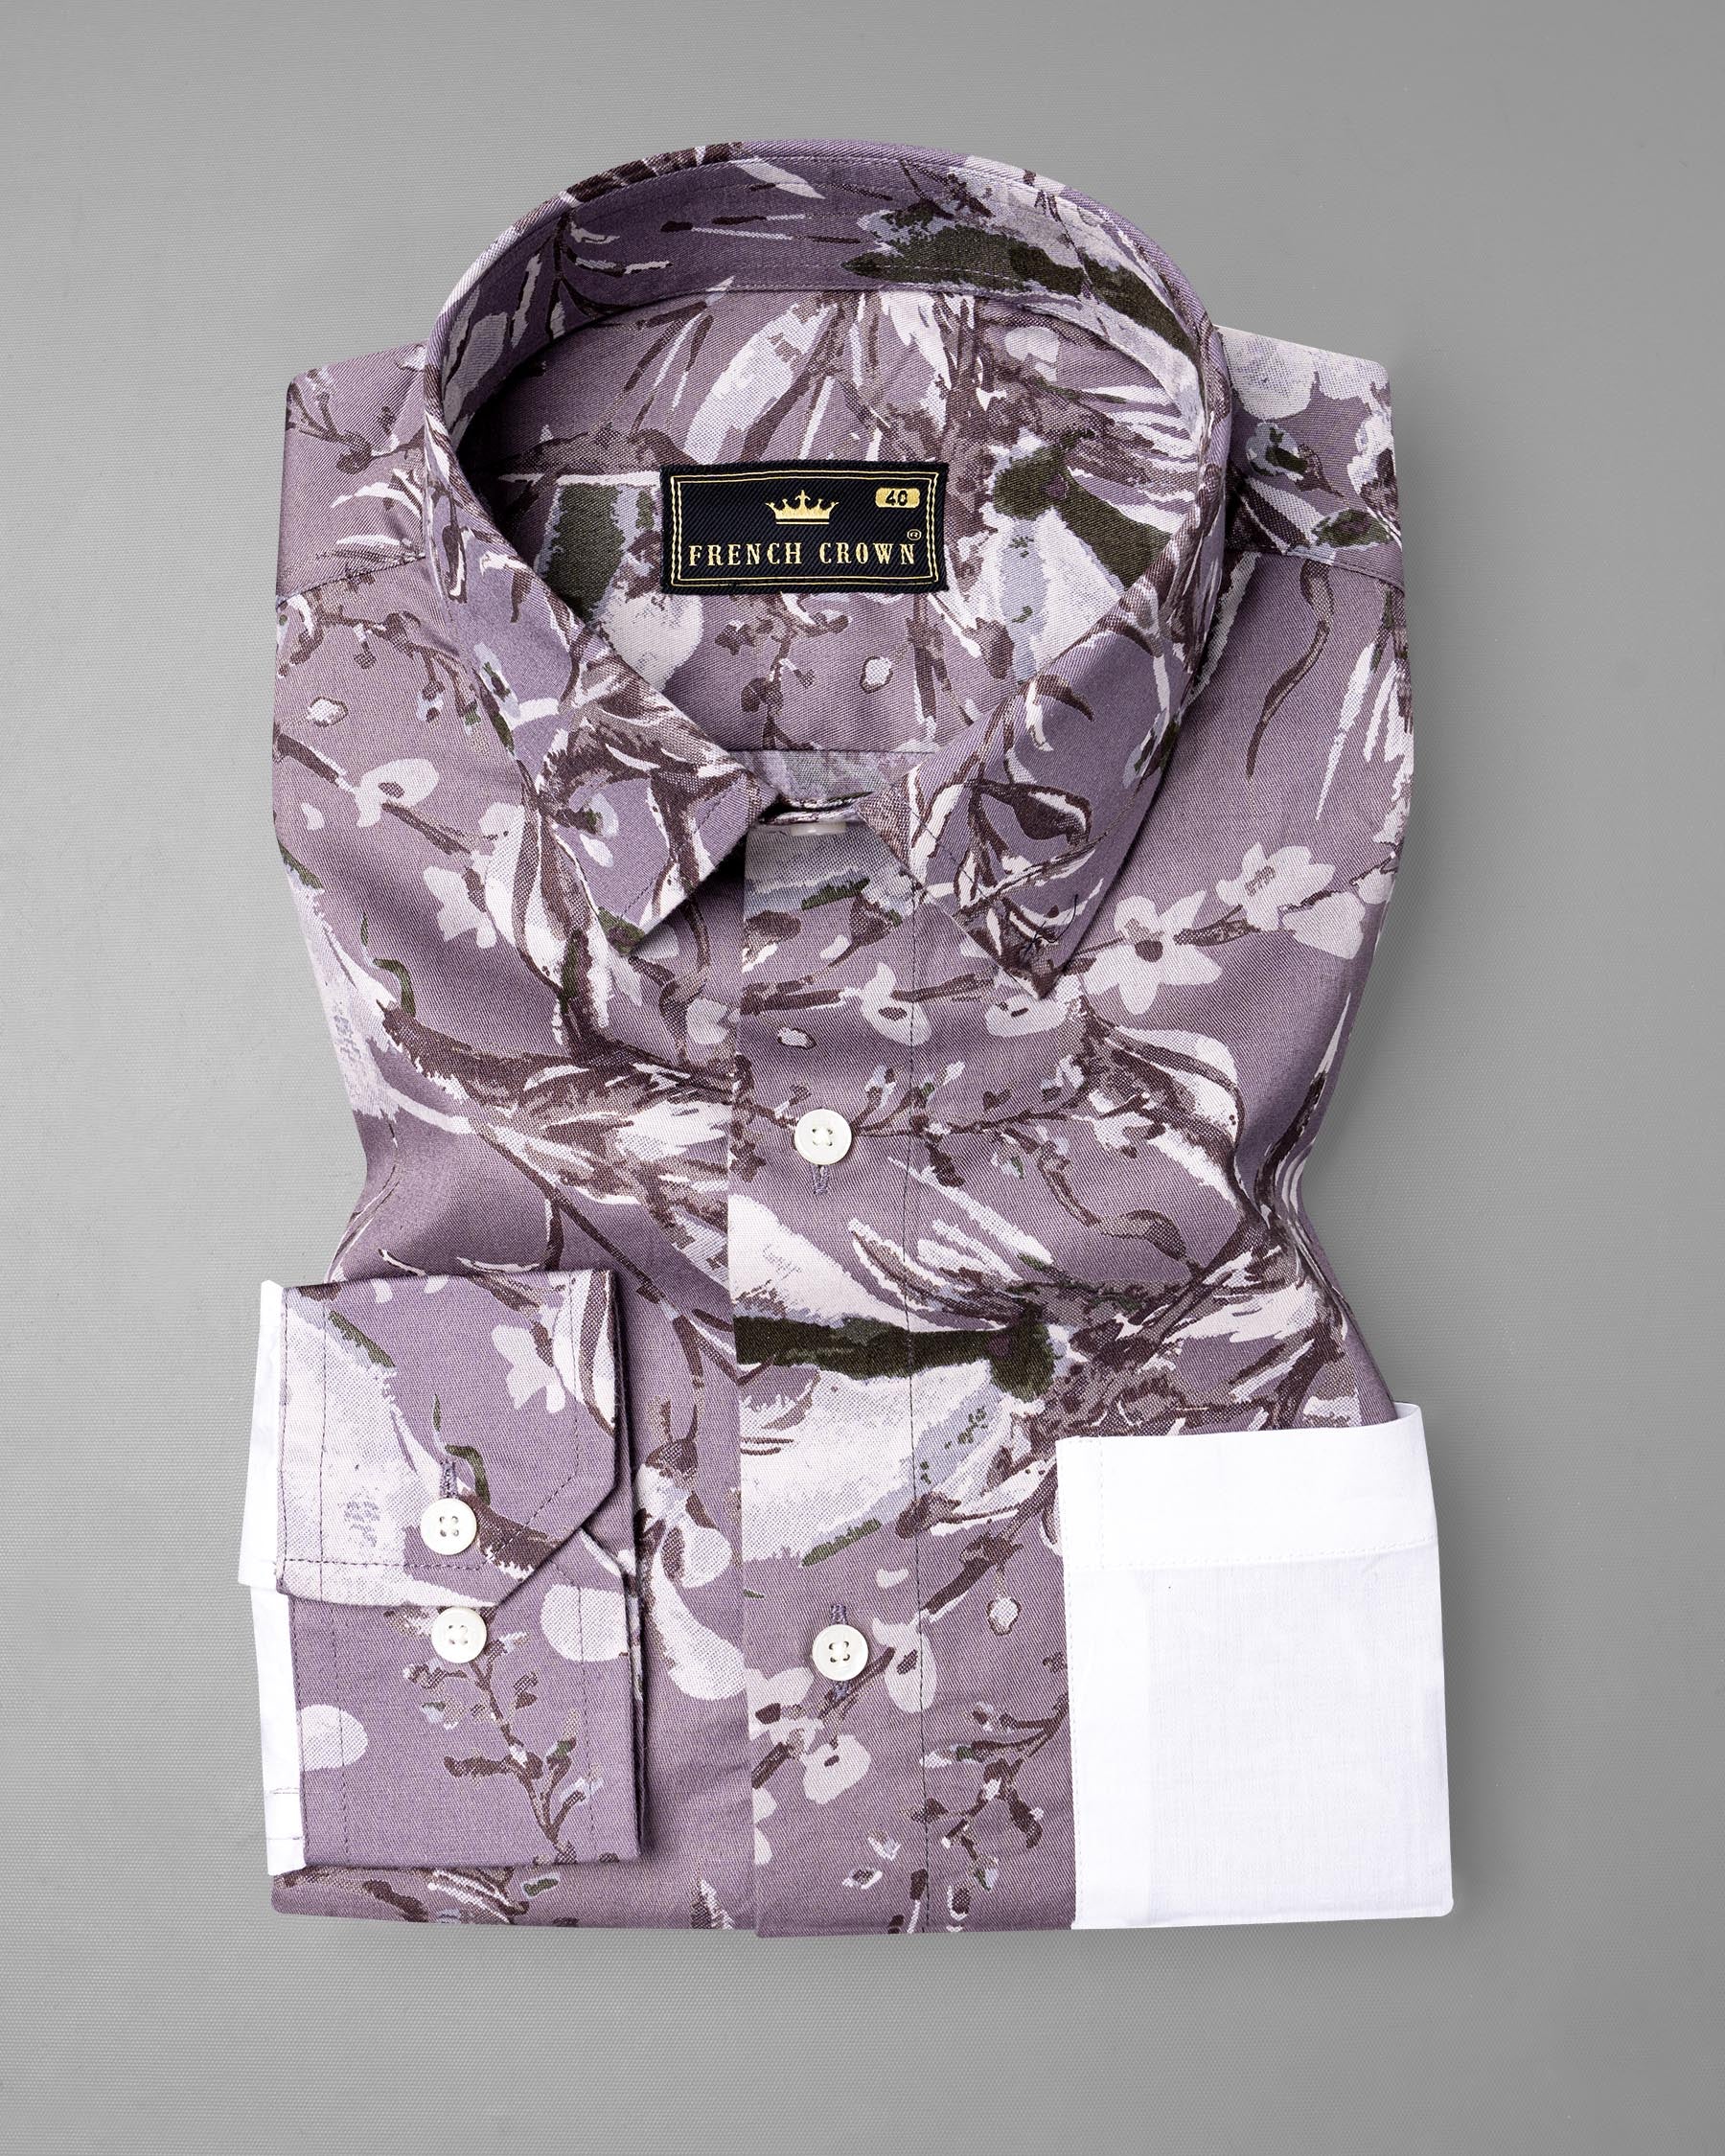 White and Bouquet Purple Floral Print Super Soft Premium Cotton designer Shirt 6991-P138-38,6991-P138-38,6991-P138-39,6991-P138-39,6991-P138-40,6991-P138-40,6991-P138-42,6991-P138-42,6991-P138-44,6991-P138-44,6991-P138-46,6991-P138-46,6991-P138-48,6991-P138-48,6991-P138-50,6991-P138-50,6991-P138-52,6991-P138-52